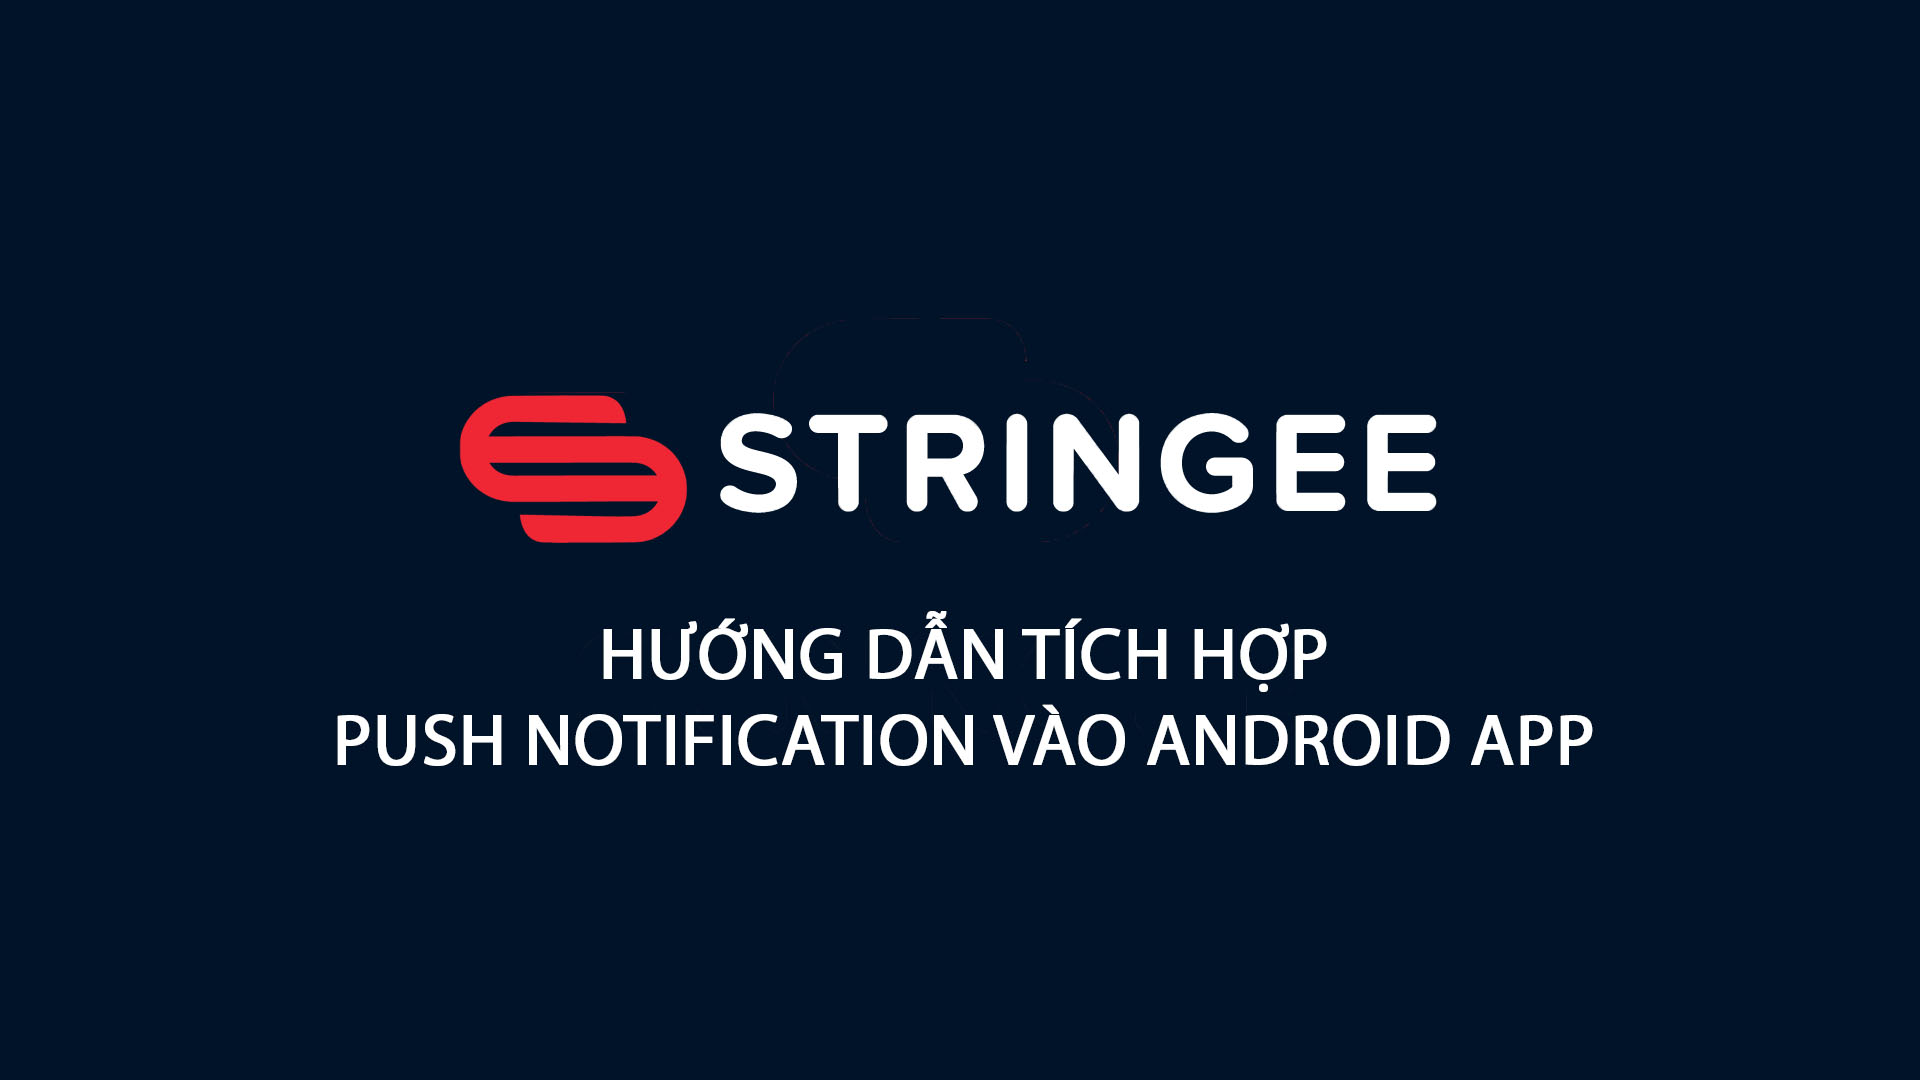 Hướng dẫn tích hợp Push Notification trên Android APP với Stringee Video Call API